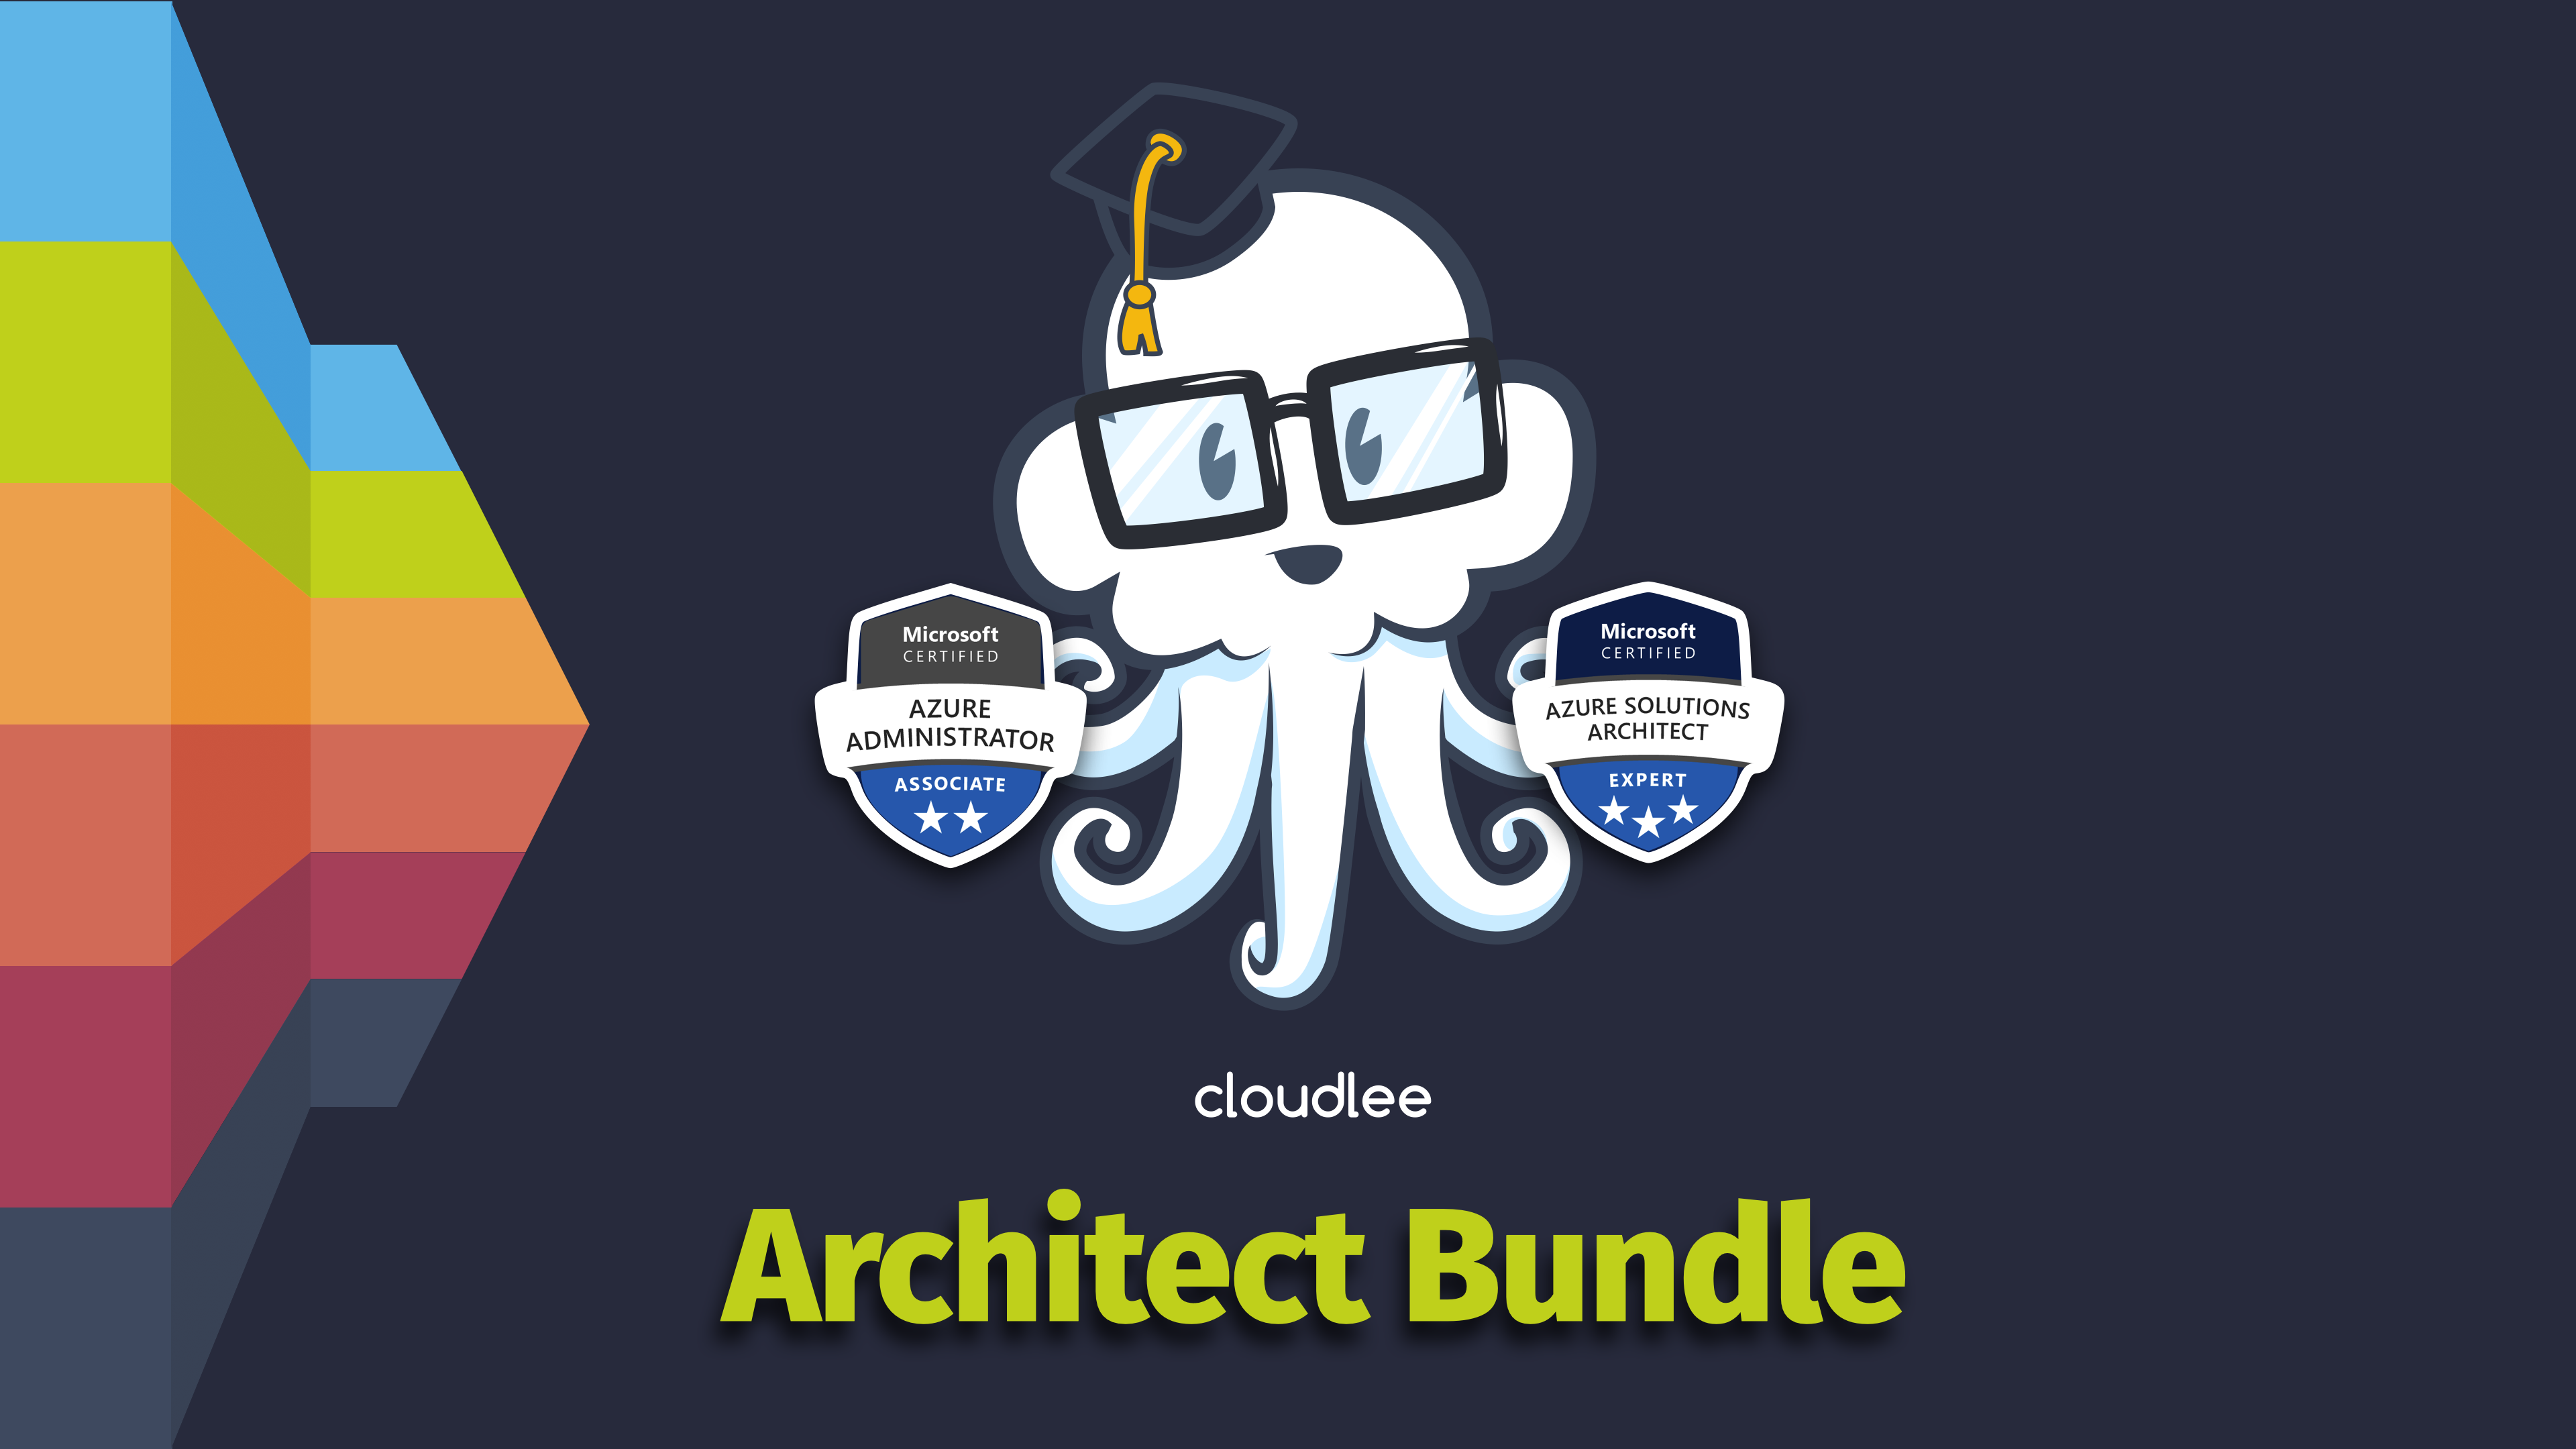 Azure Architect Expert Bundle